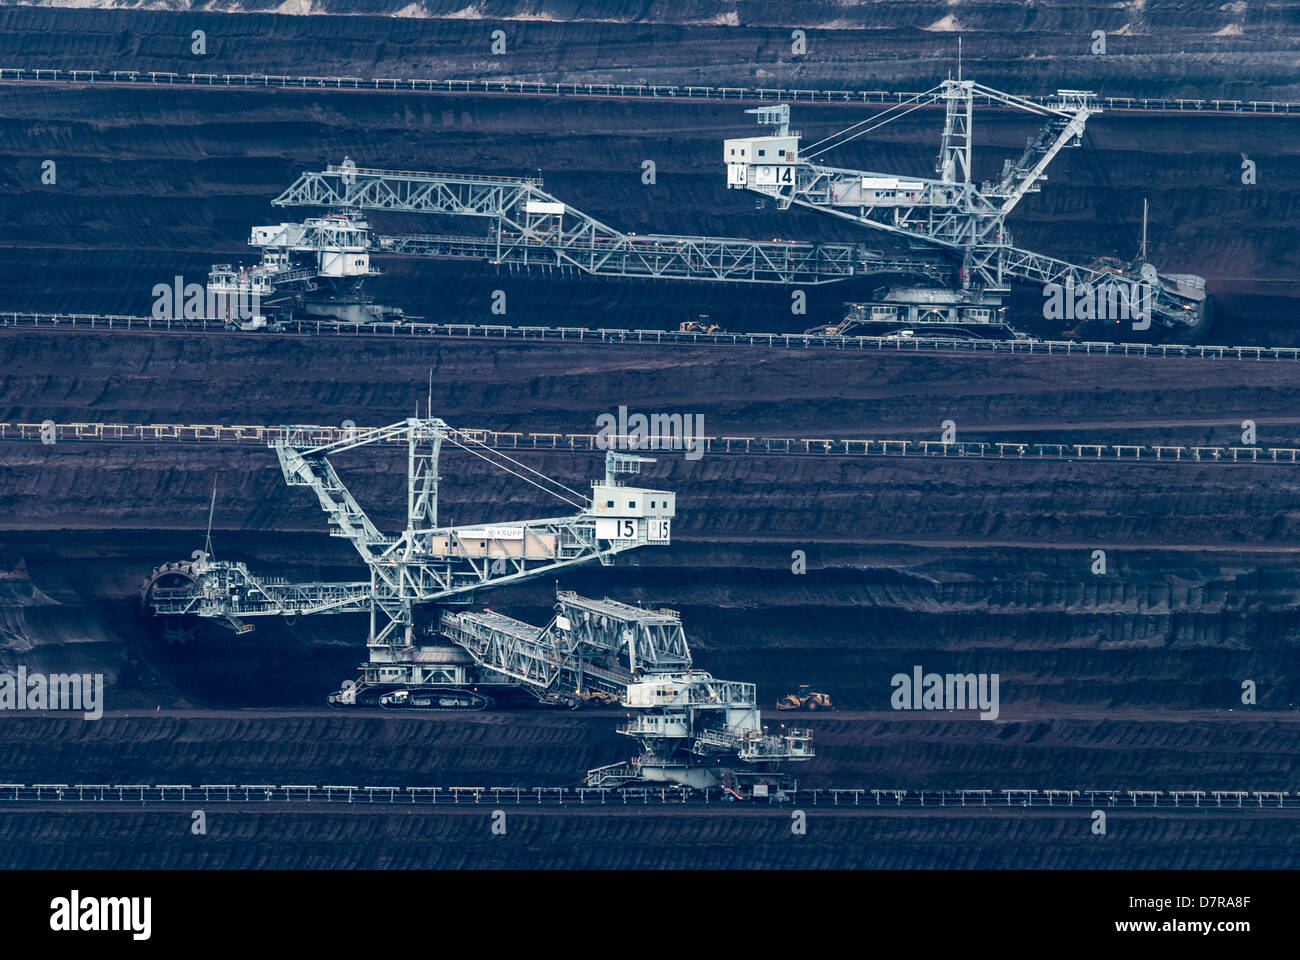 Die Loy Yang Kraftwerke offen geschnittenen Brown Coal Mine in Victoria, Australien. Stockfoto